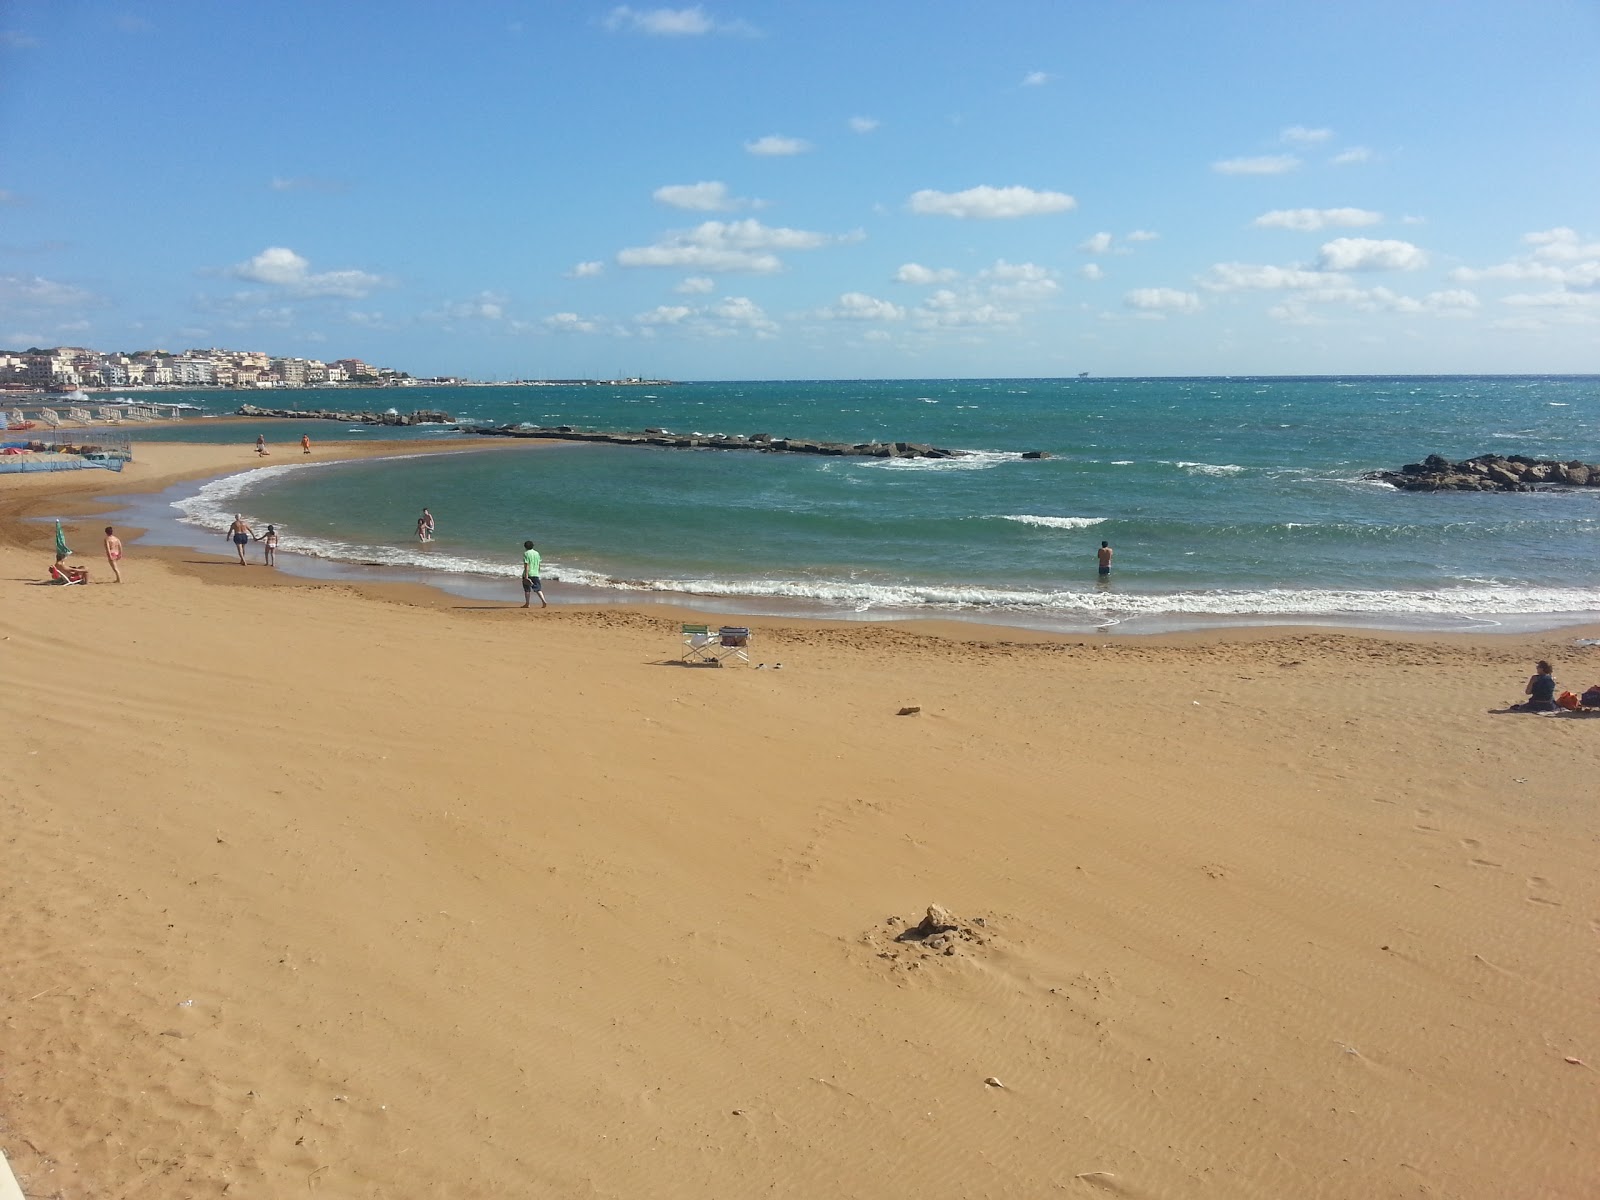 Crotone beach II'in fotoğrafı kahverengi kum yüzey ile